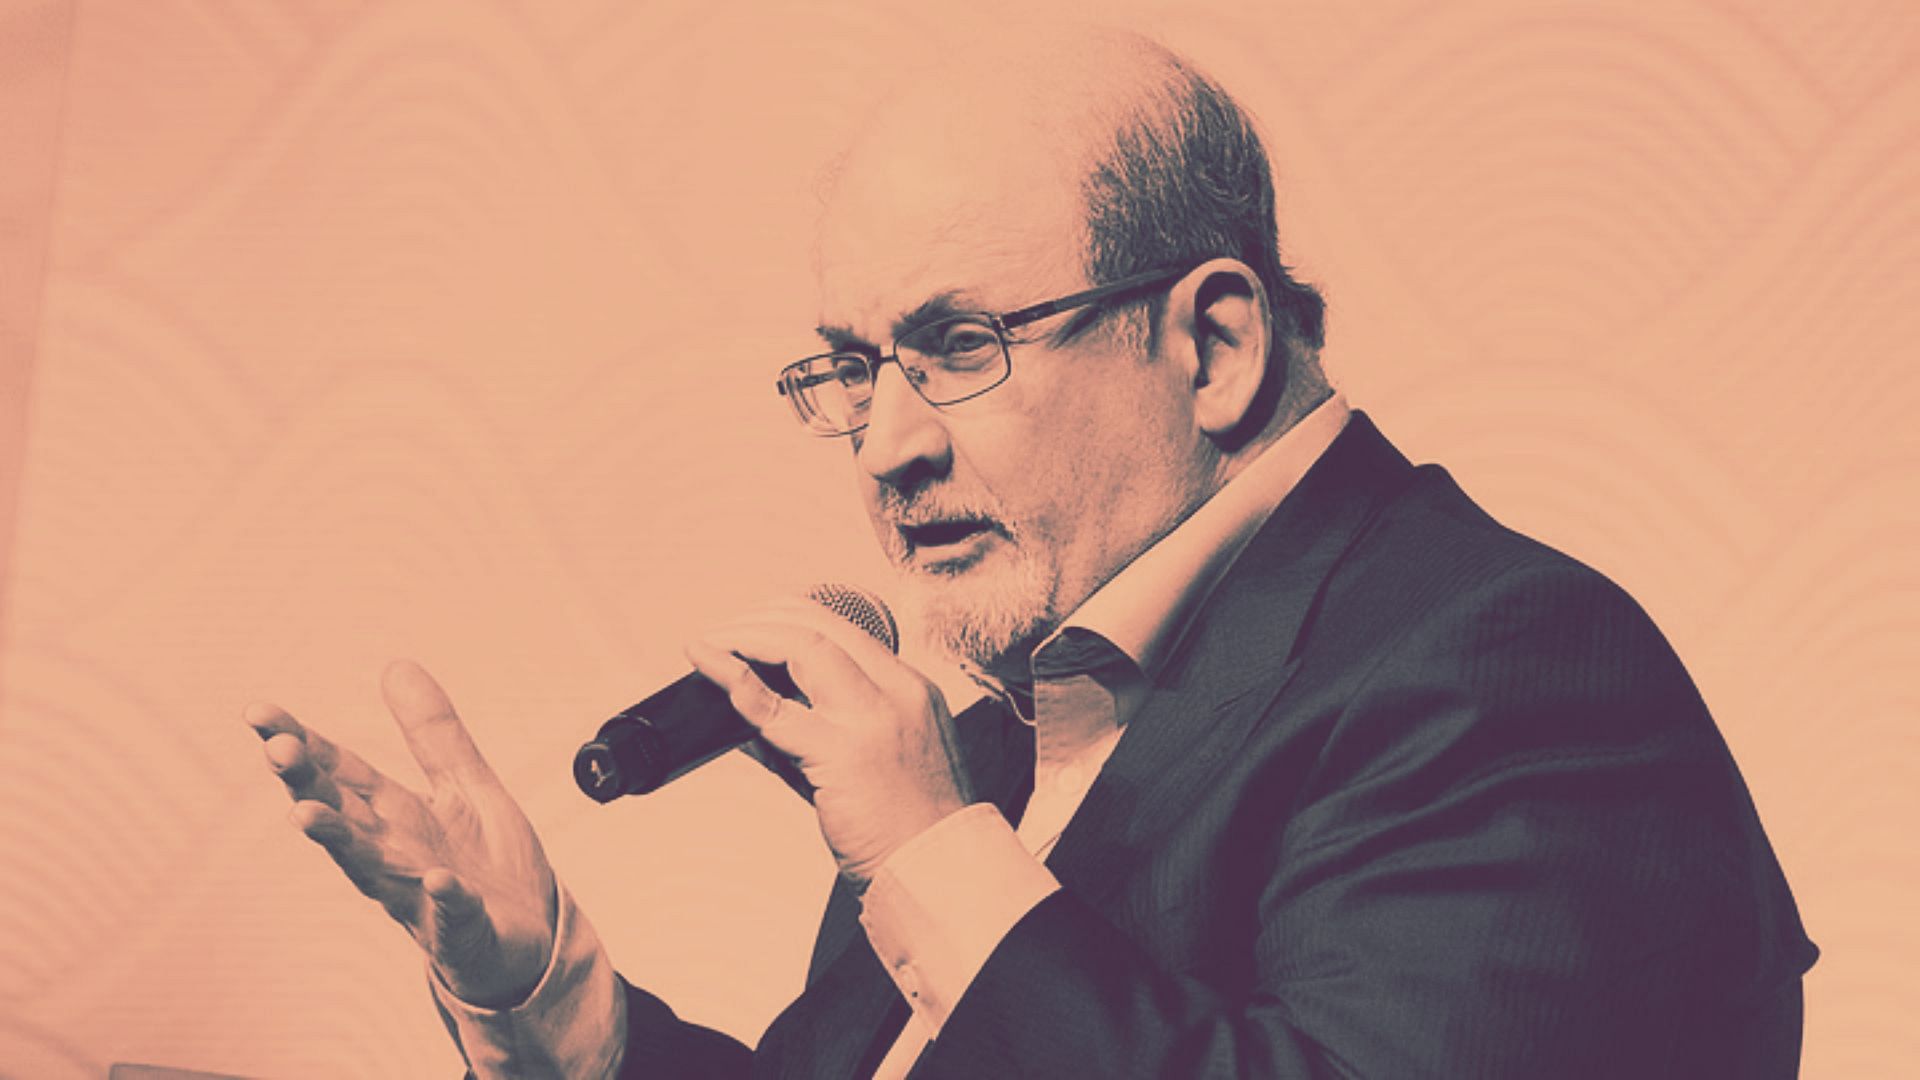 <div class="paragraphs"><p>Salman Rushdie Attacked: लेखक सलमान रुश्दी पर अमेरिका में चाकू से हमला</p></div>